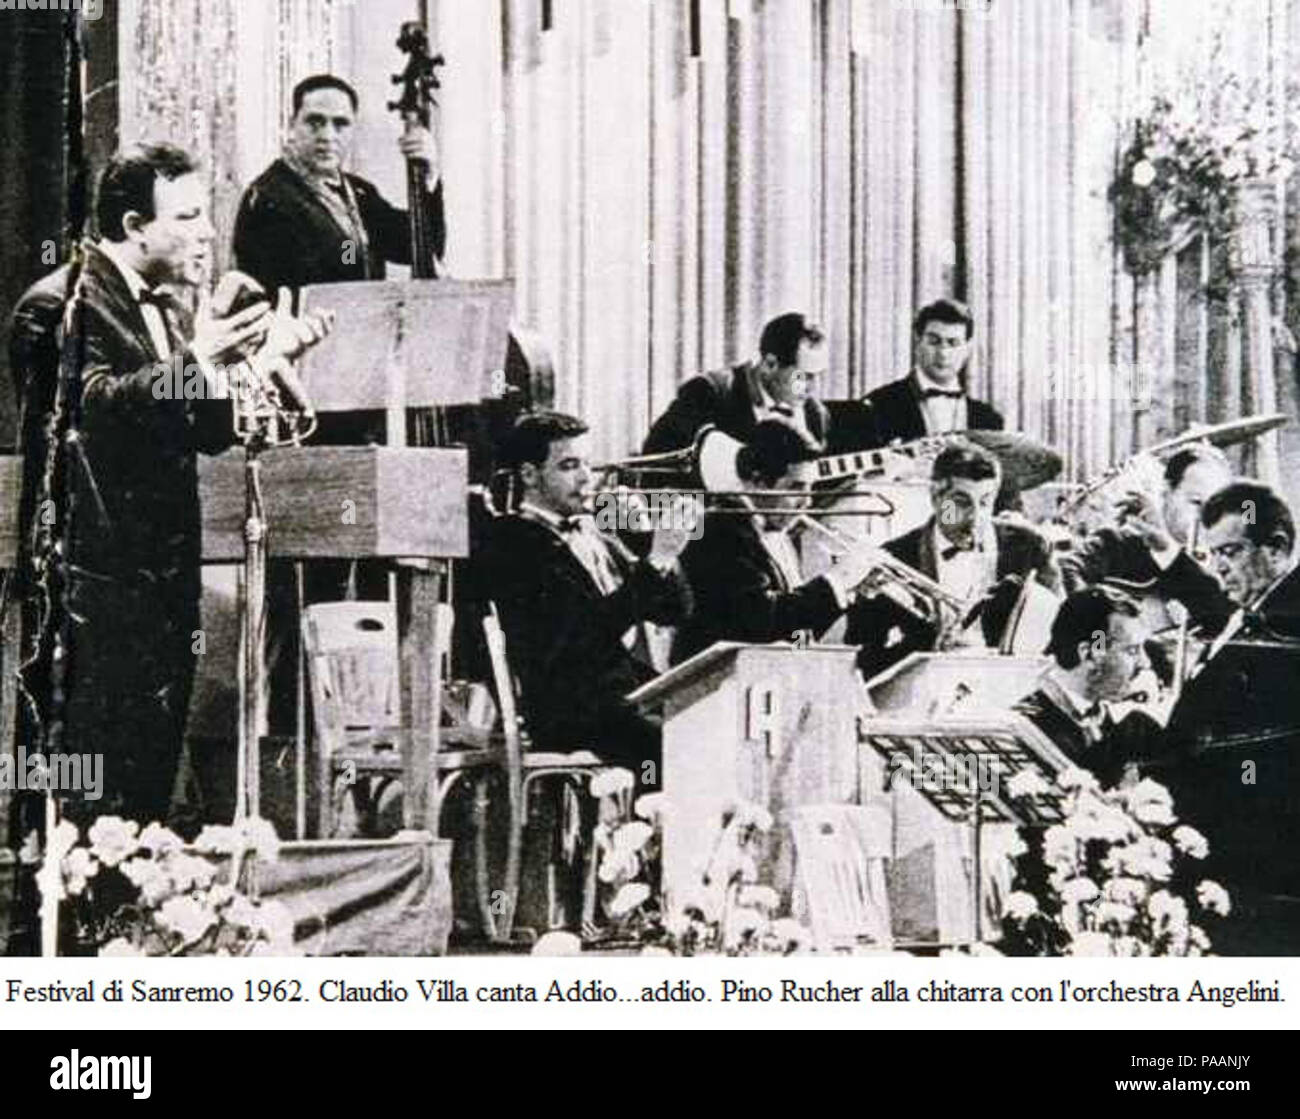 227 Sanremo 1962 - Claudio Villa canta Addio...addio Stock Photo